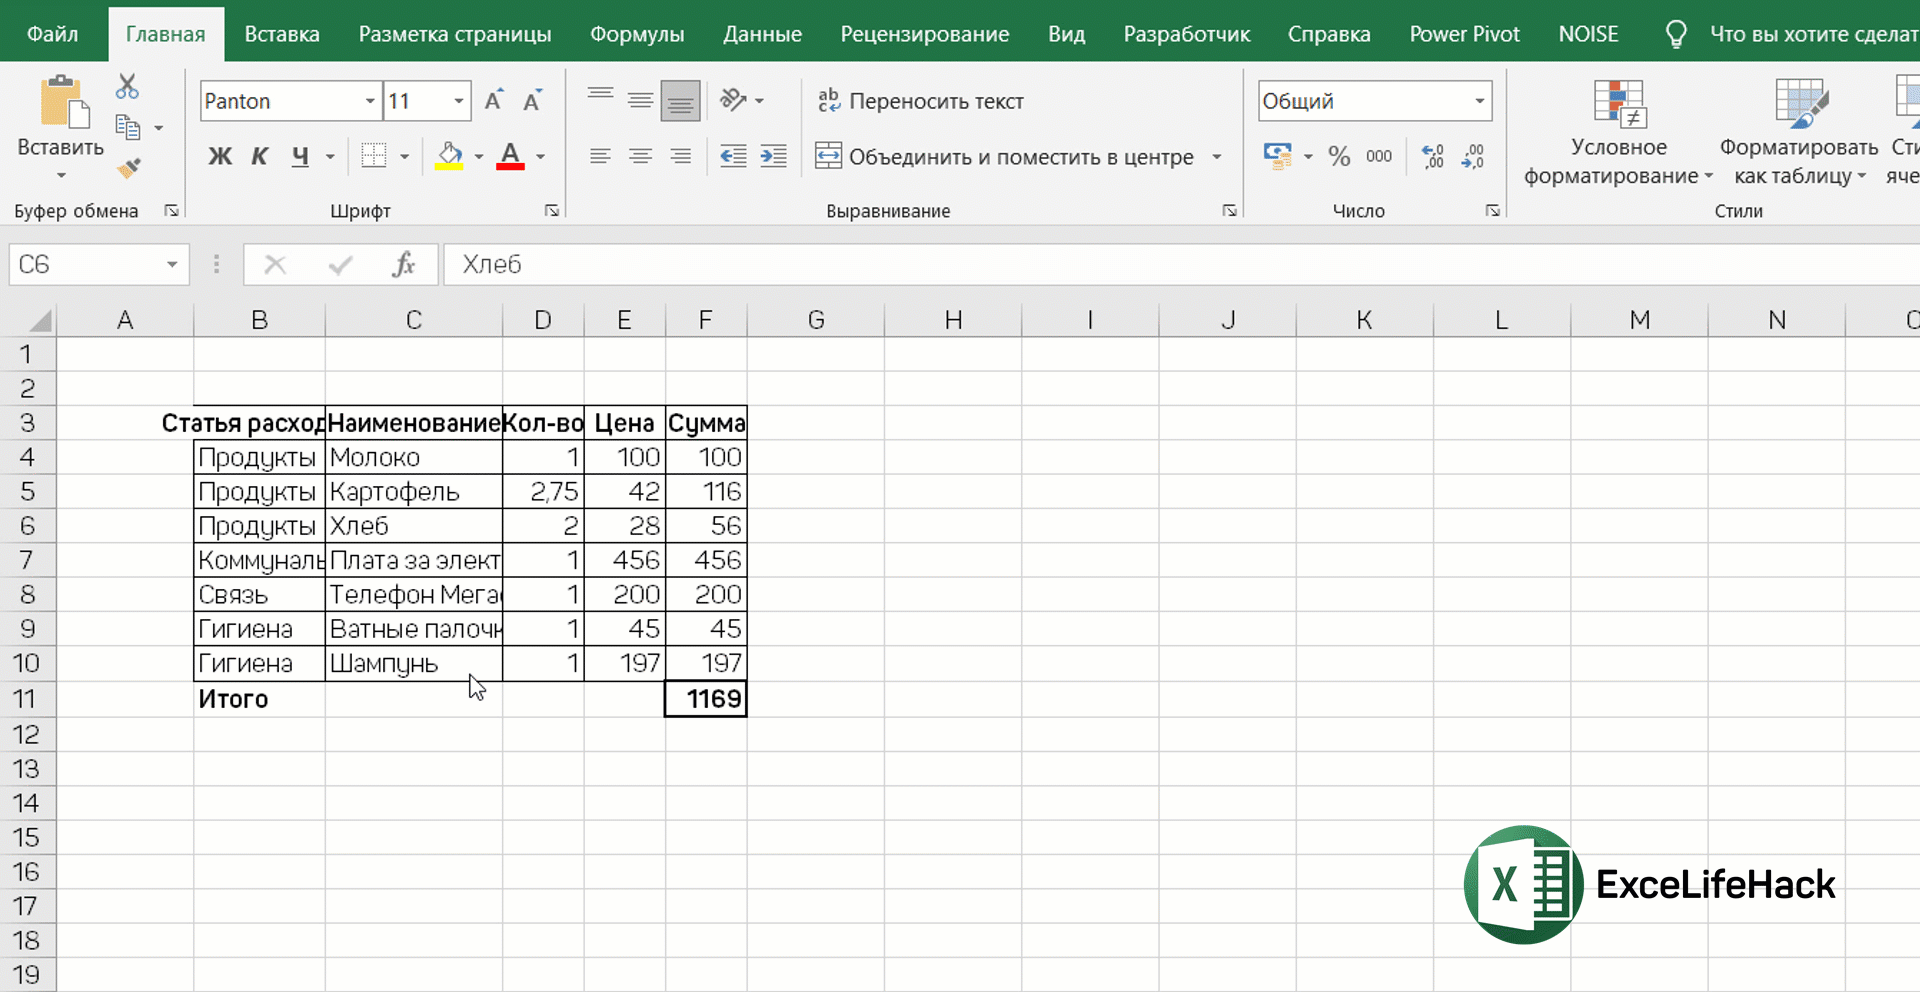 Автоподстройка ширины столбцов в Excel